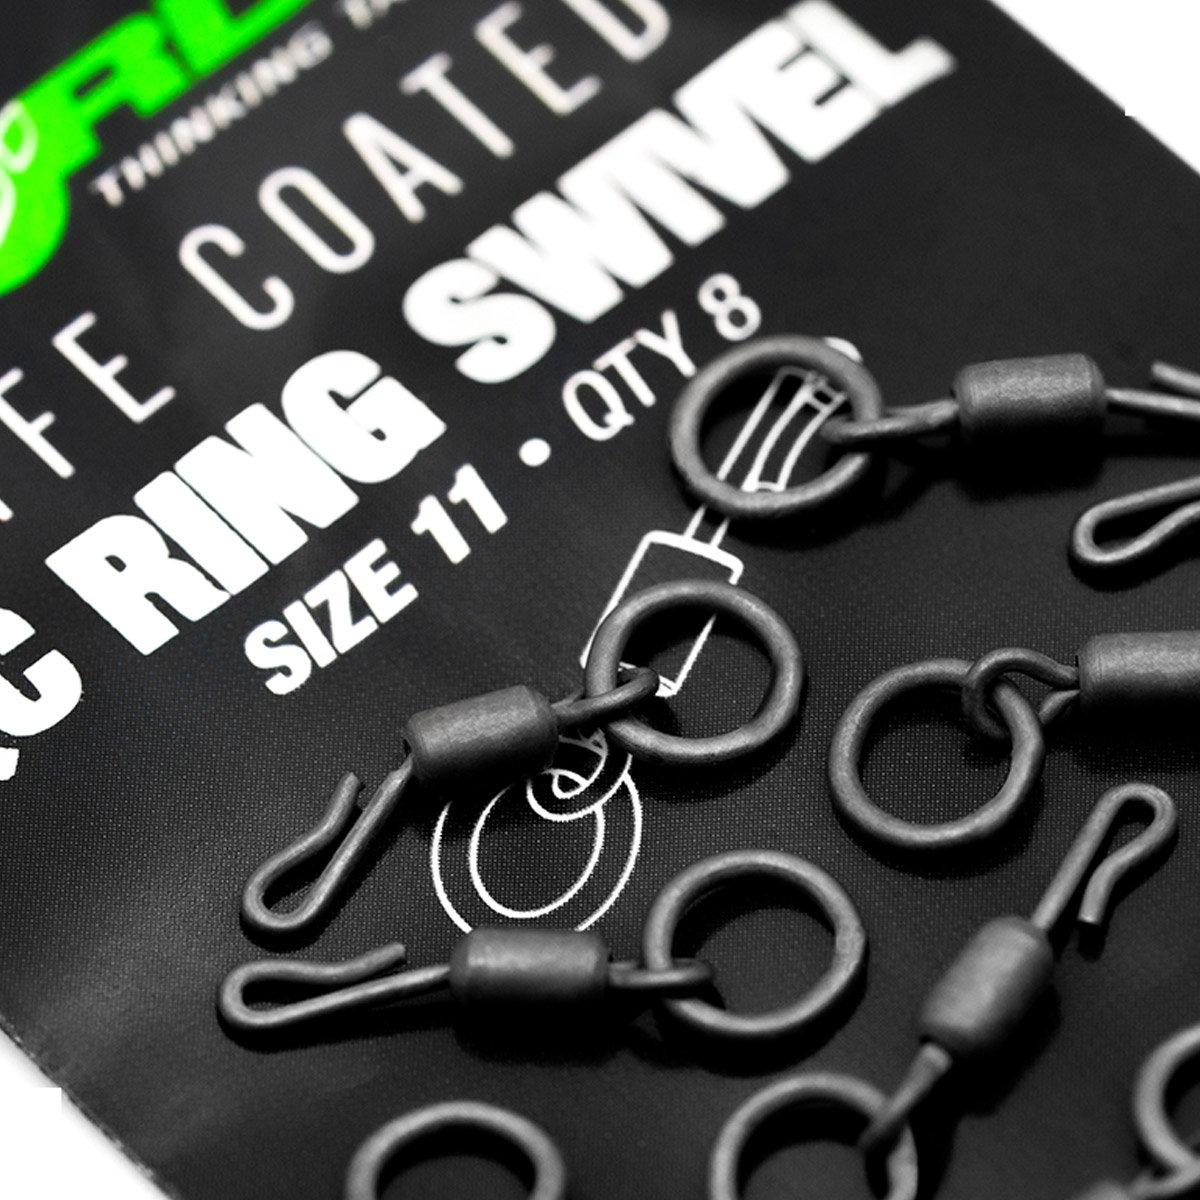 Korda PTFE Coated QC Ring Swivel Size 11